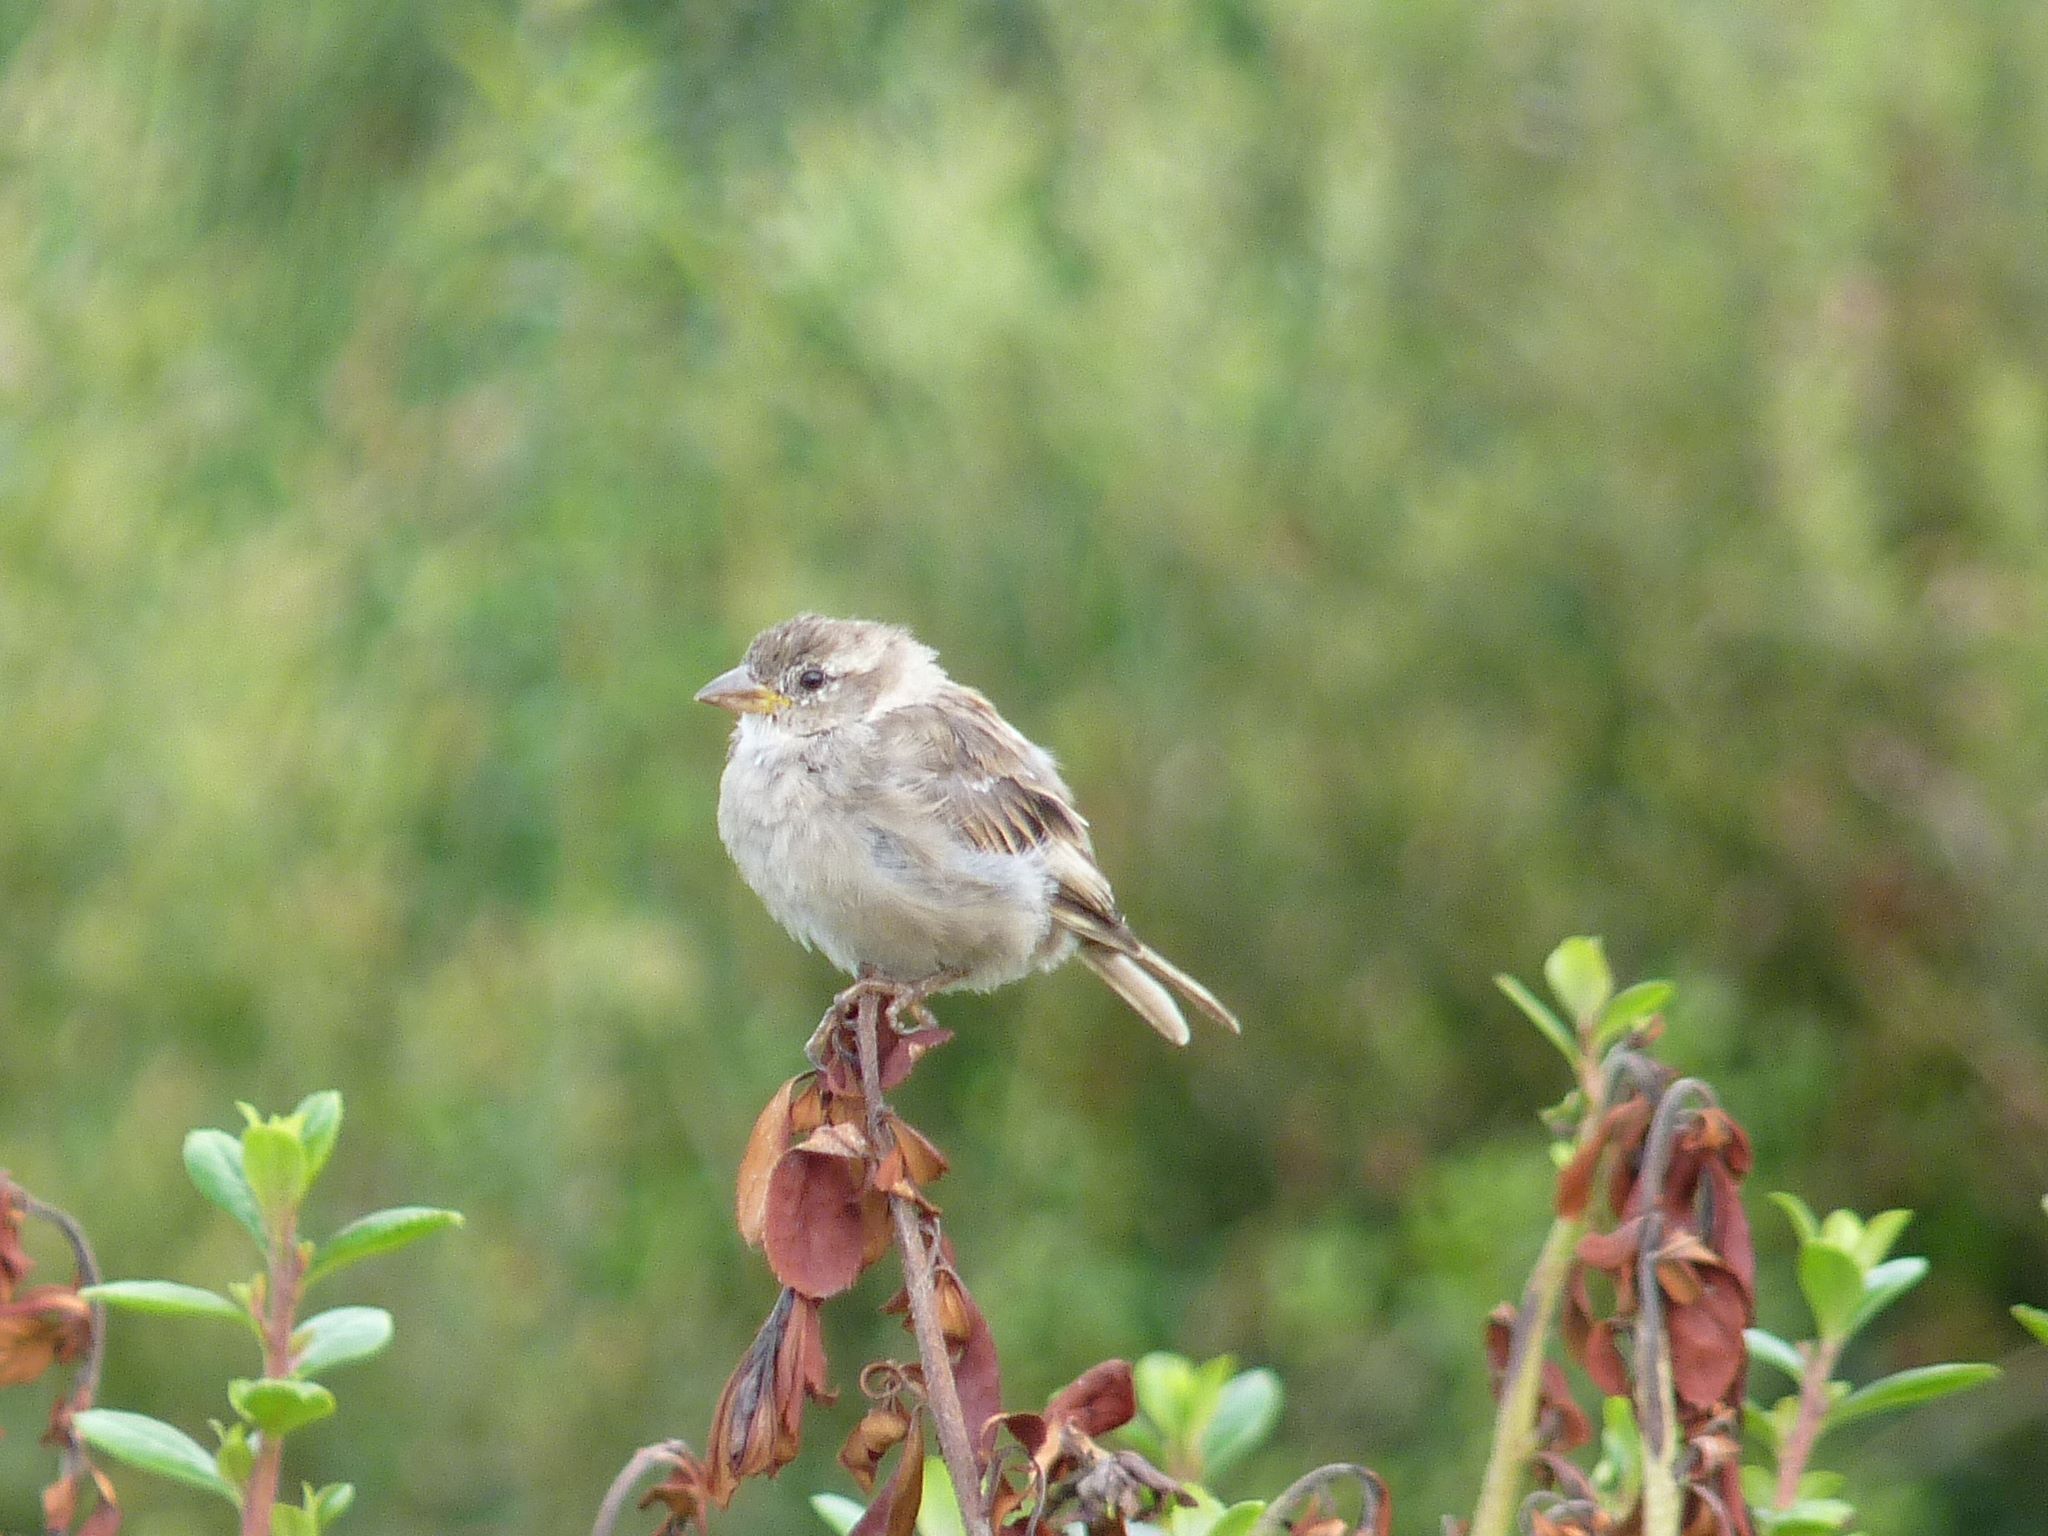 Recenser les oiseaux, identifier les plantes : les sciences participatives font-elles vraiment avancer la recherche ?